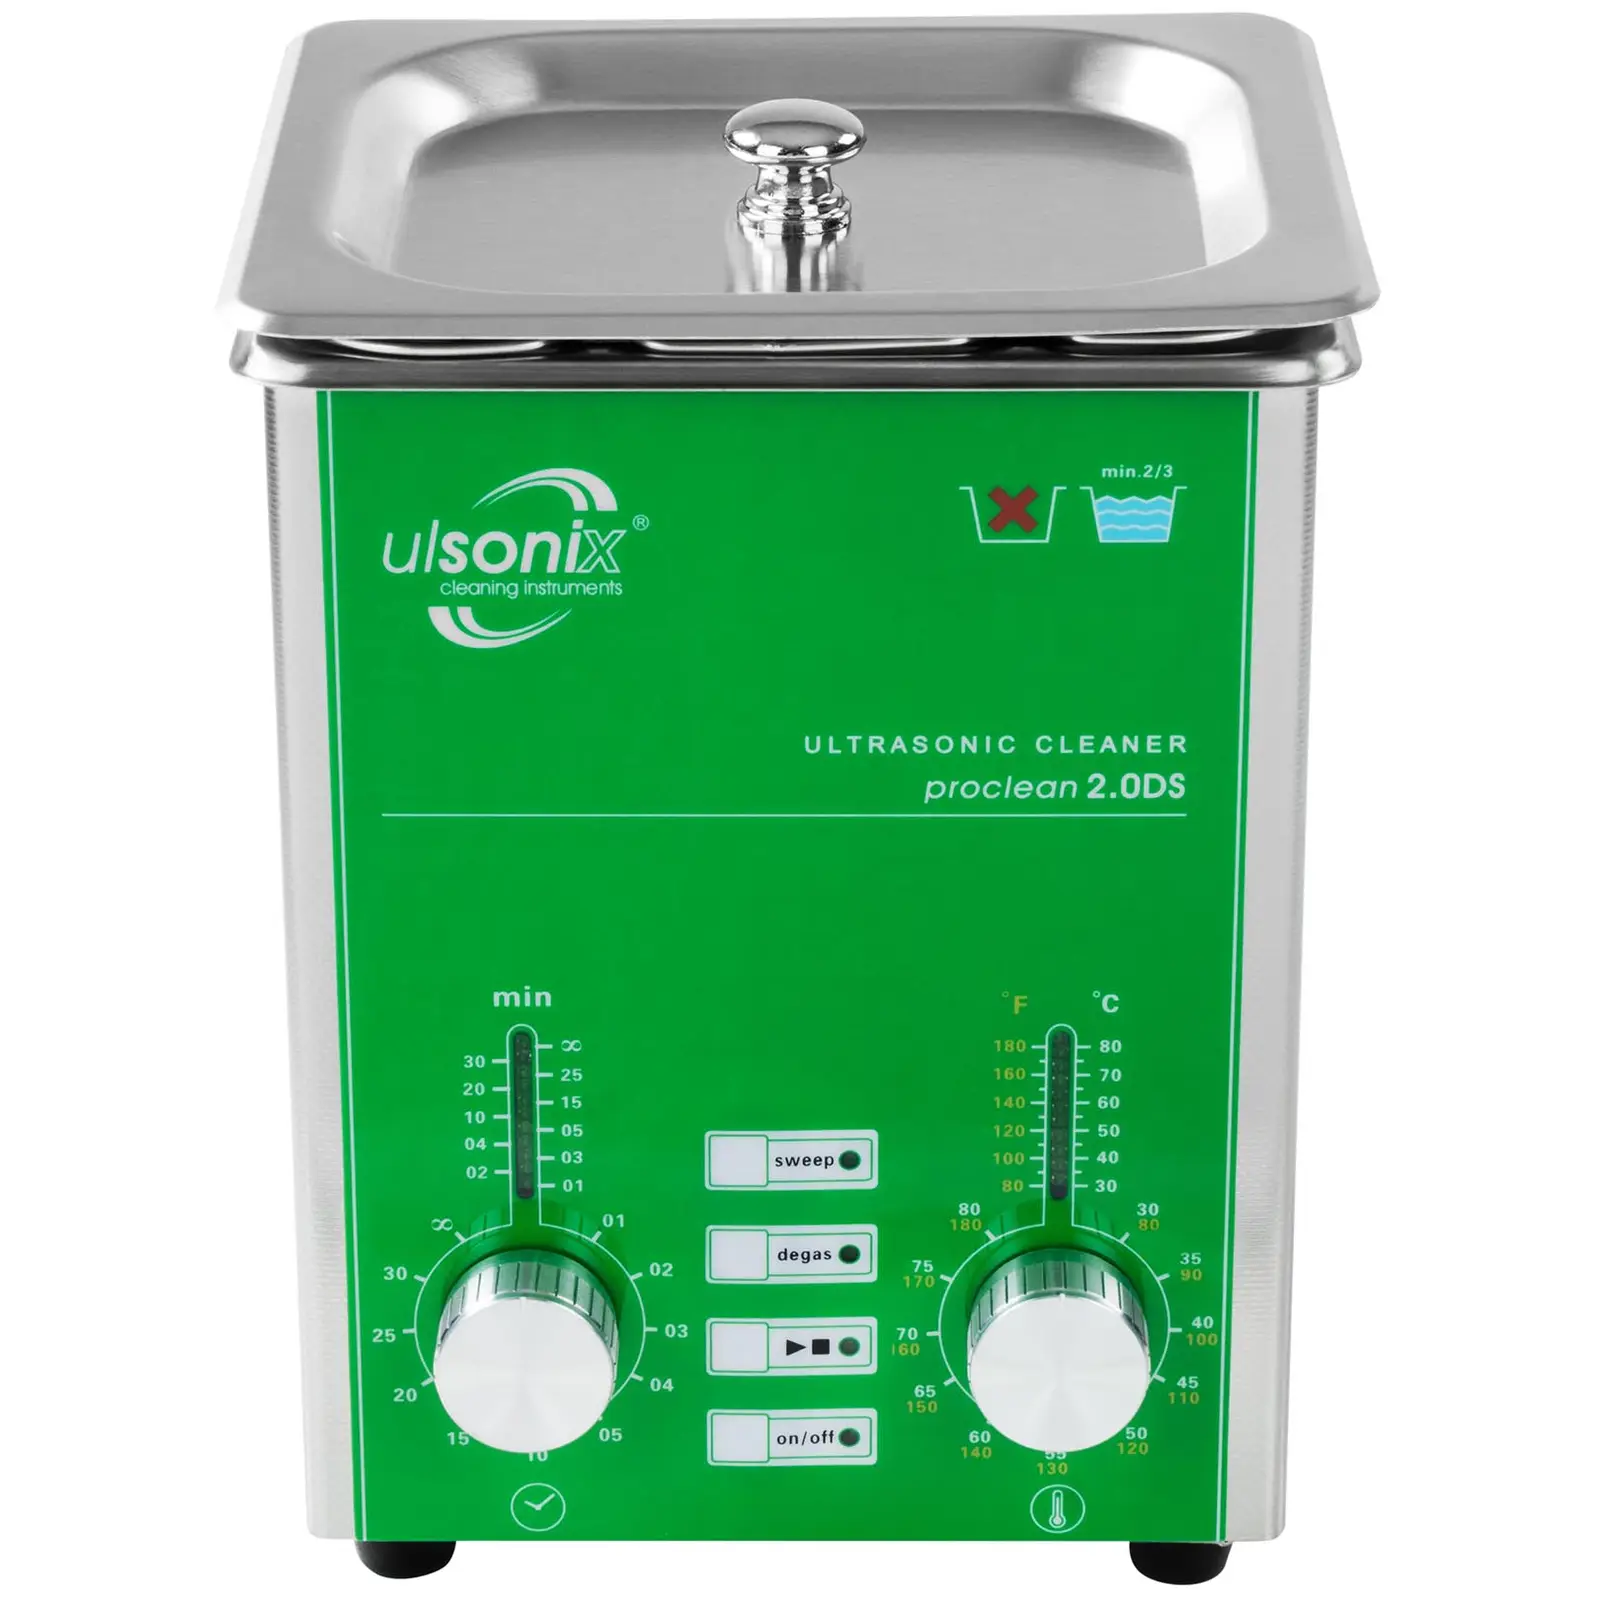 Ultralydsrenser - 2 liter - degas - sweep